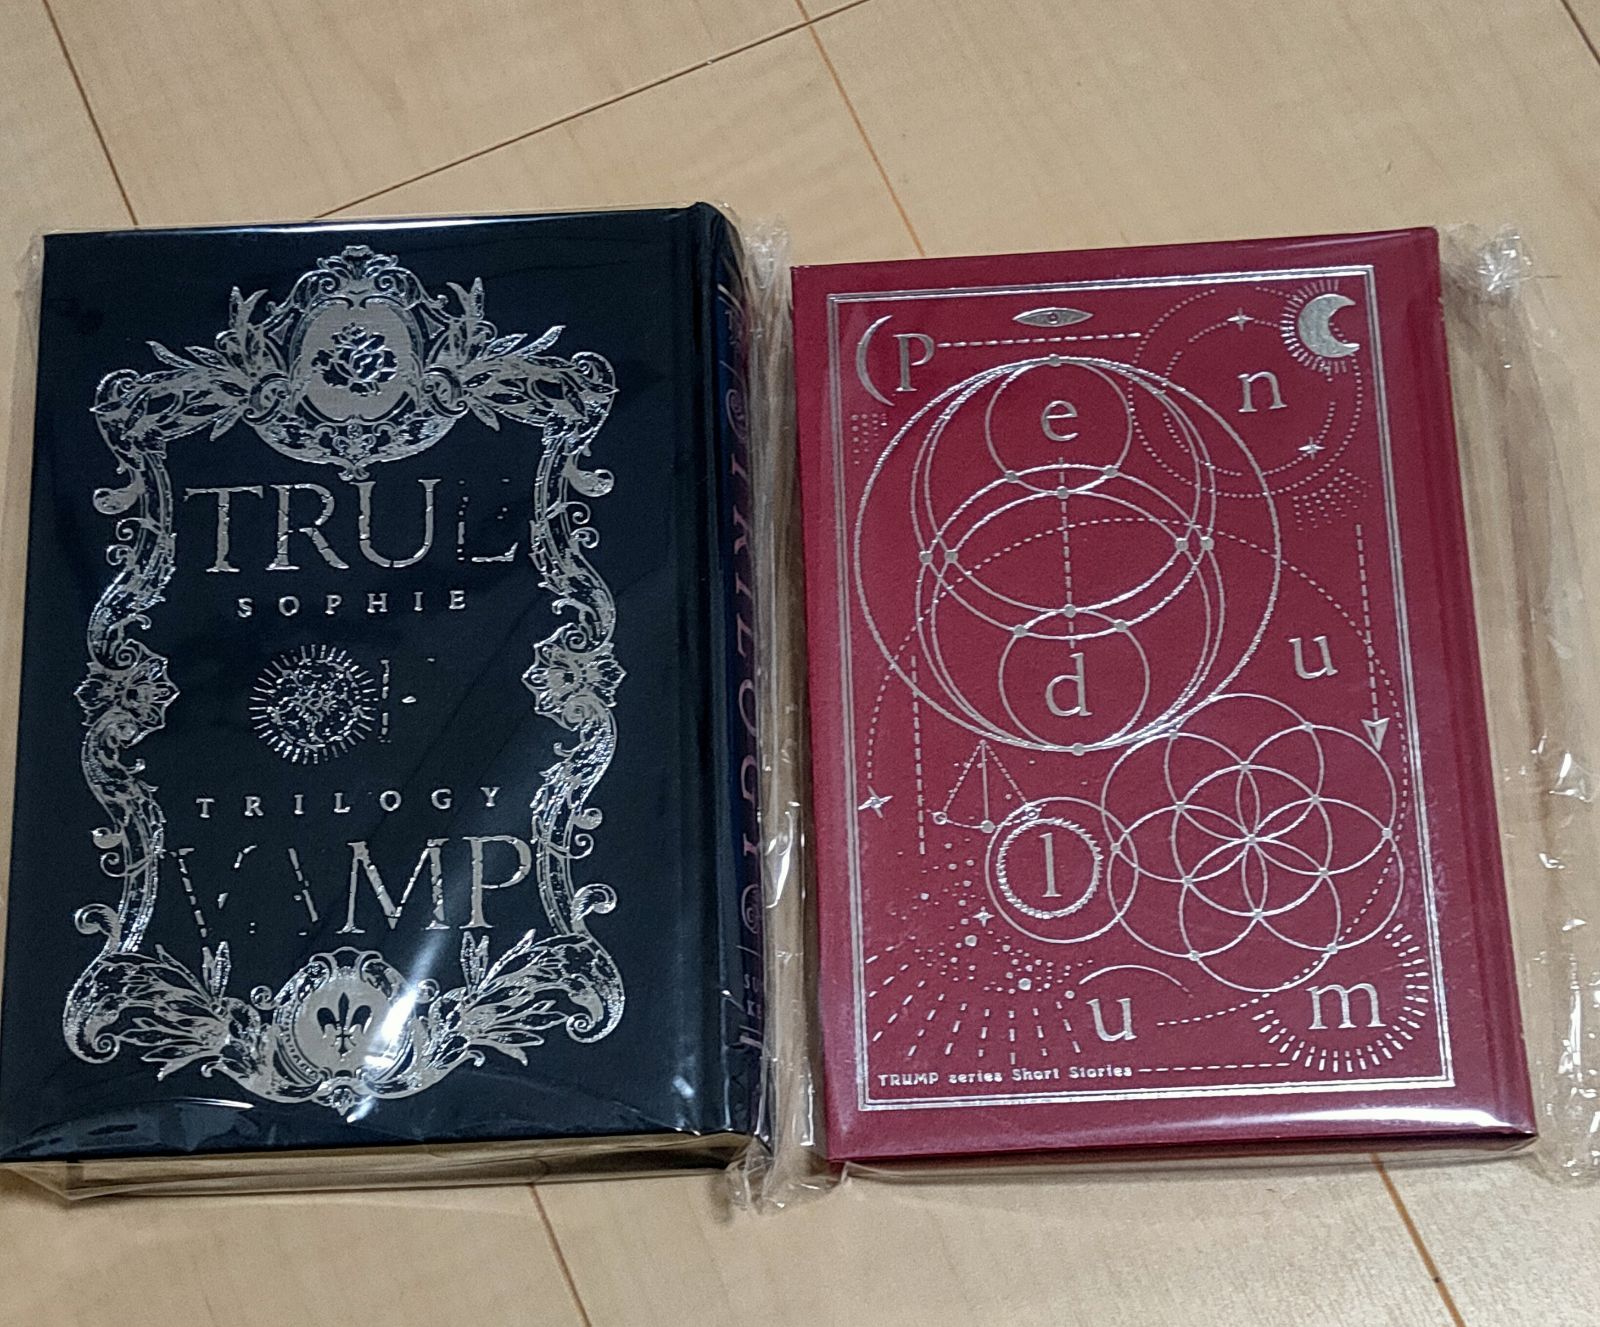 ソフィ・トリロジー TRUMPシリーズ戯曲集Ⅰ - 文学/小説